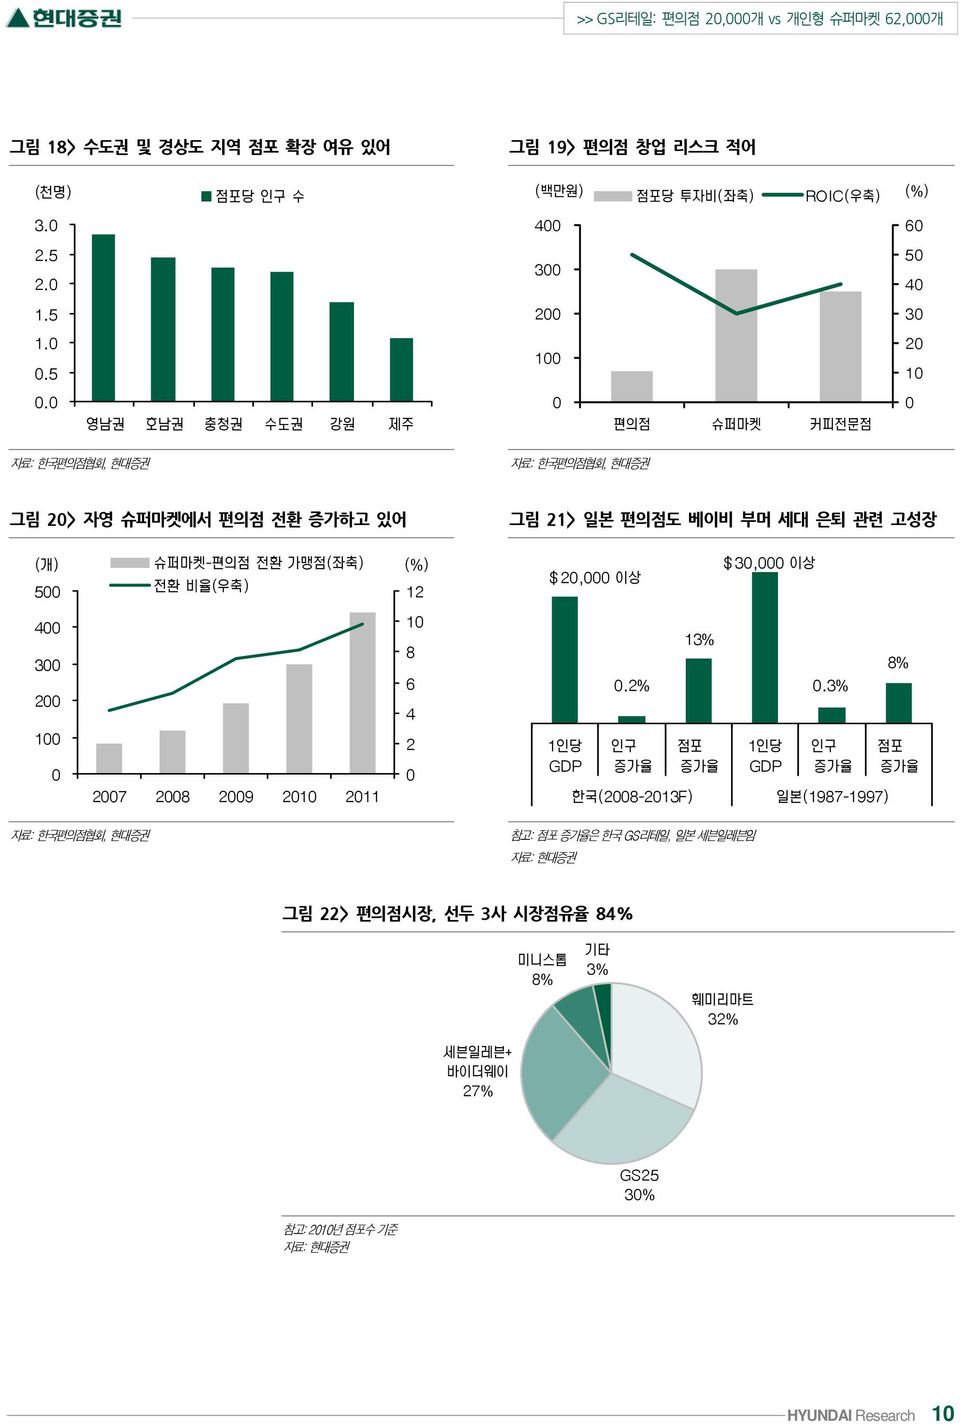 그림 21> 일본 편의점도 베이비 부머 세대 은퇴 관련 고성장 자료: 한국편의점협회, 현대증권 참고: 점포 증가율은 한국 GS리테일, 일본